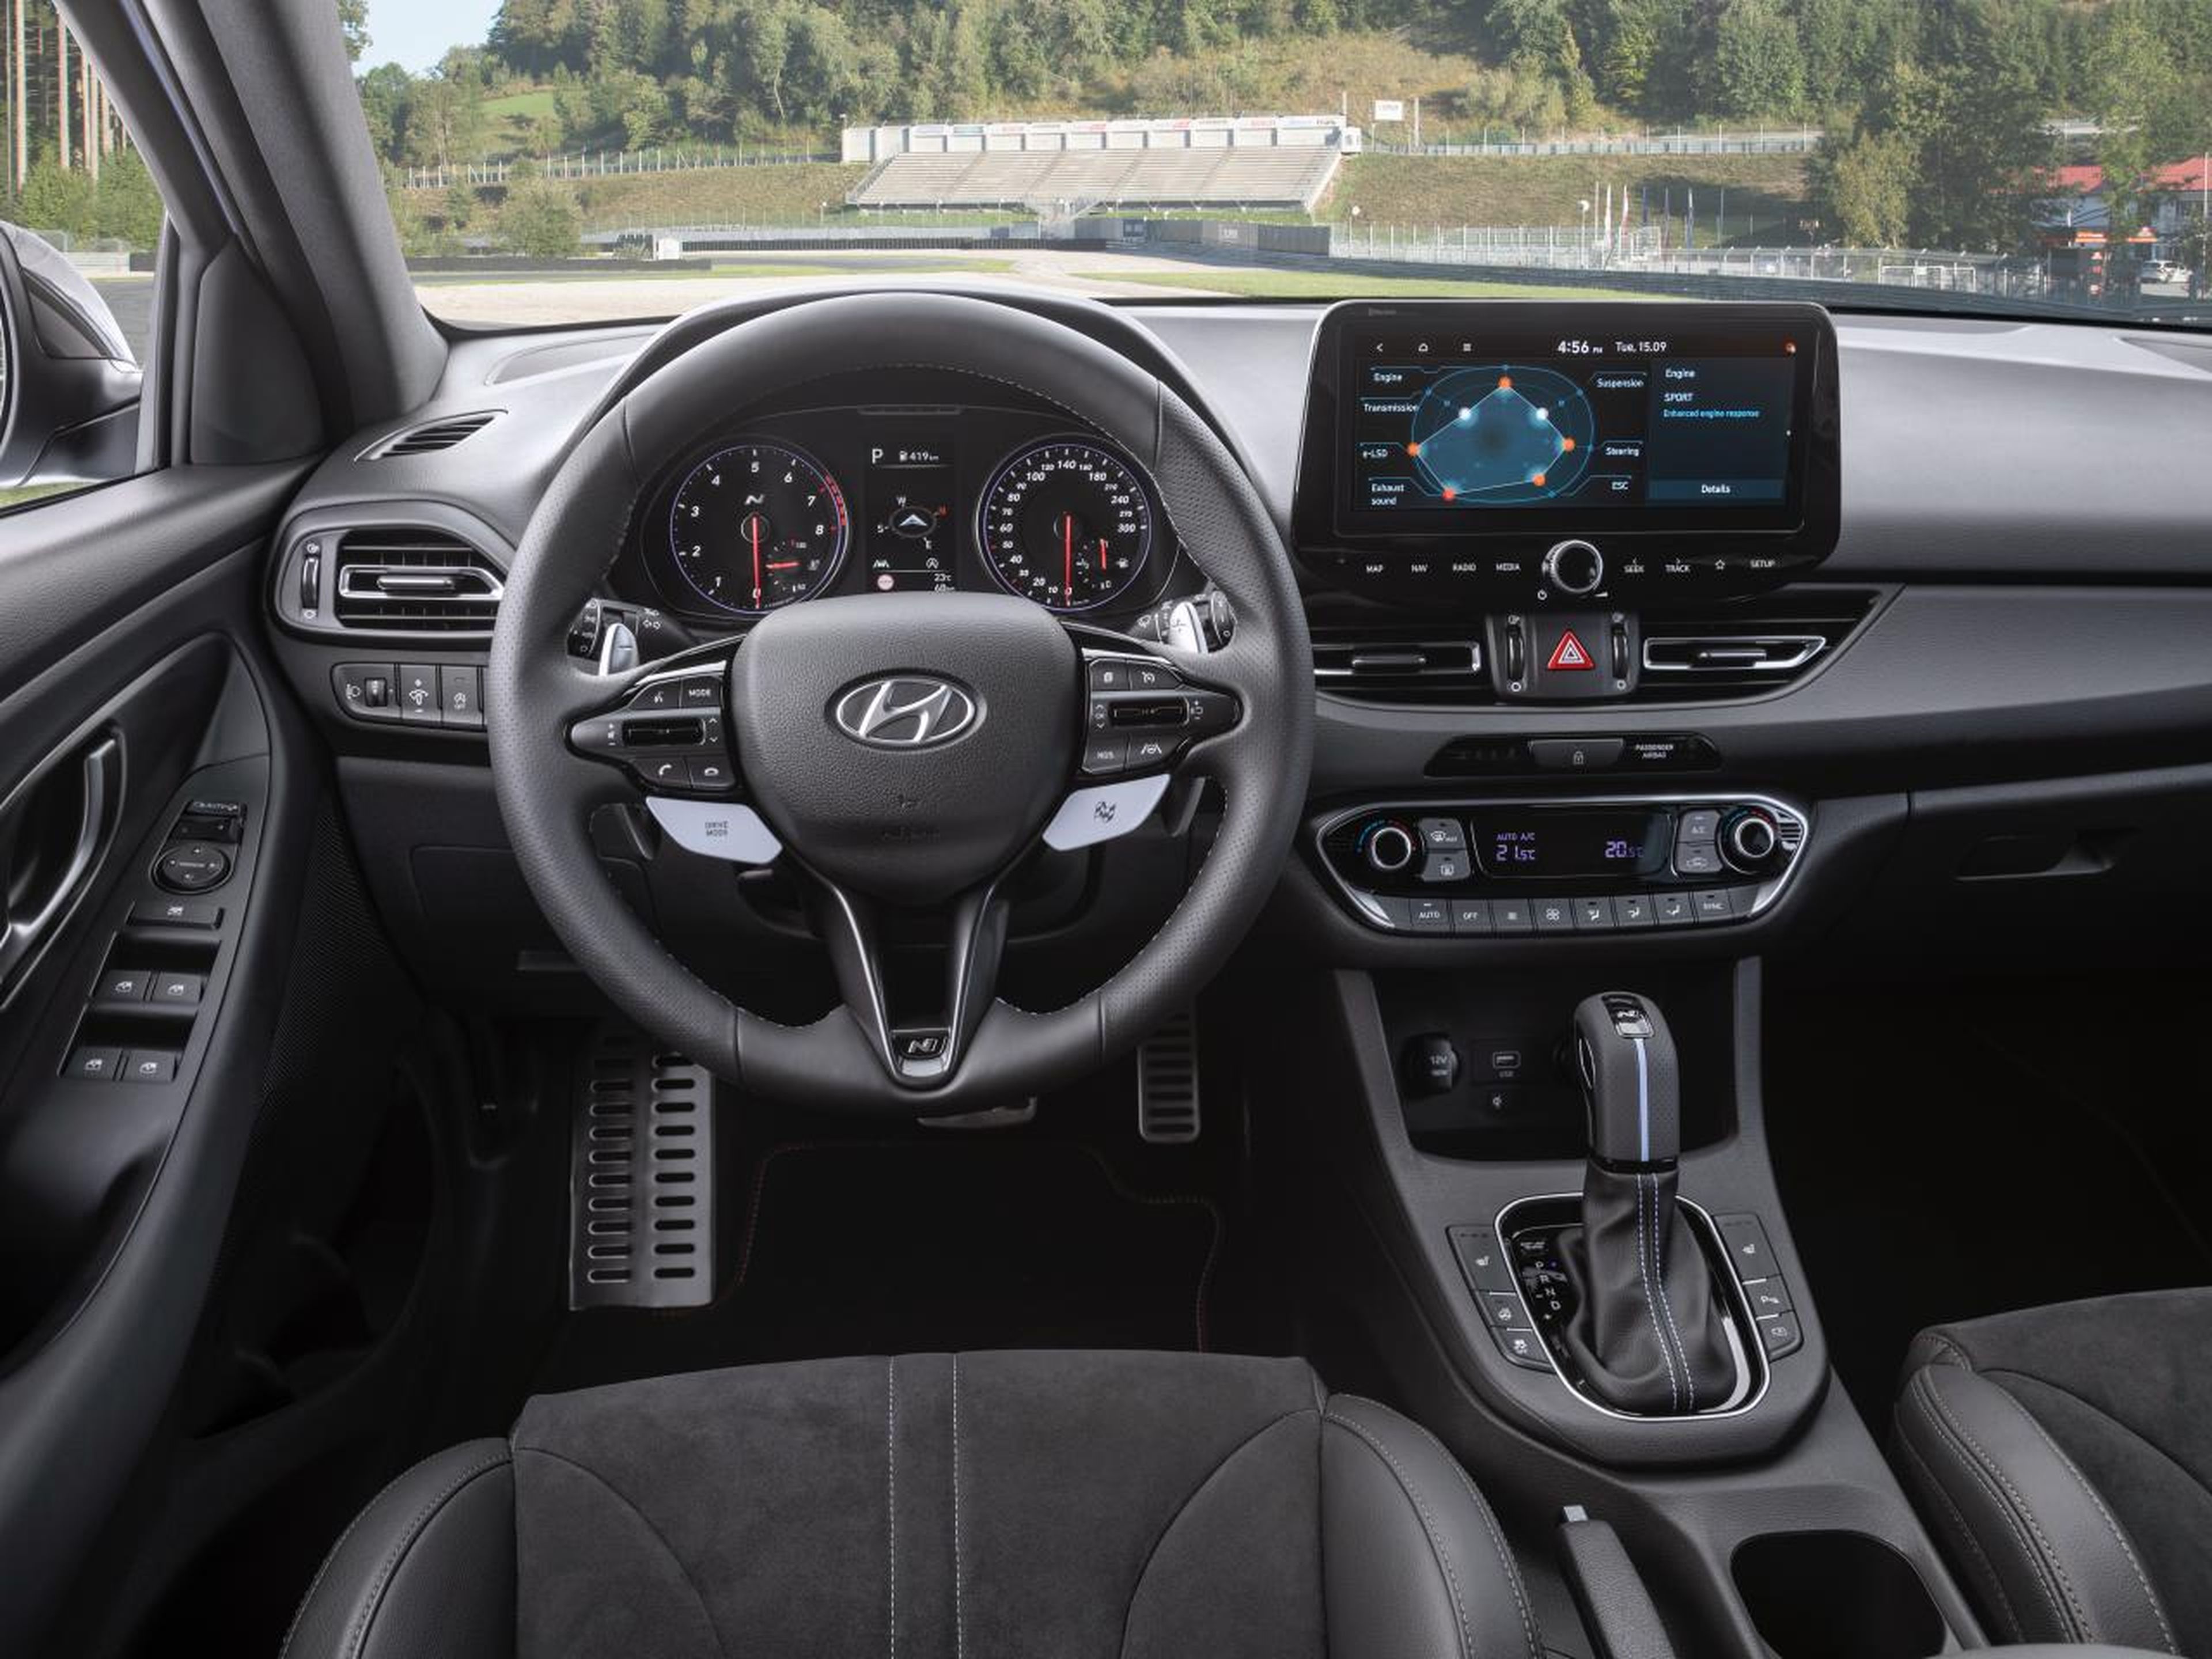 Hyundai i30 N interior